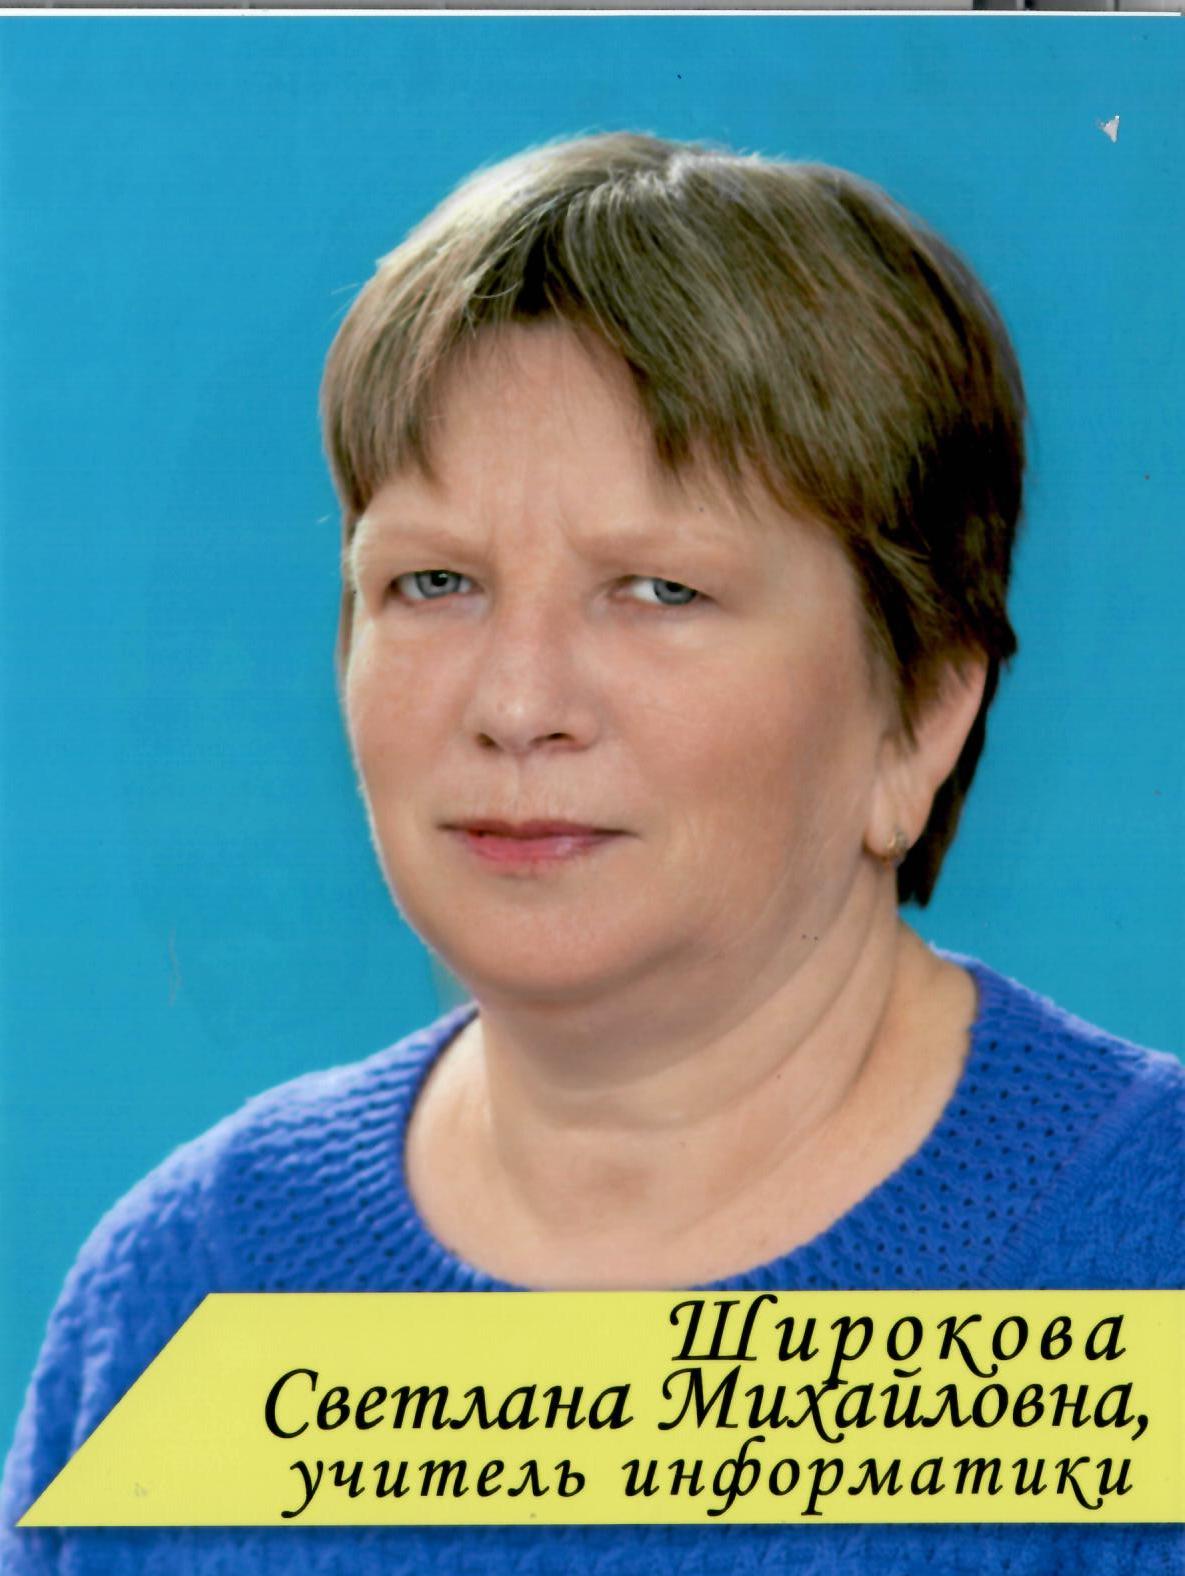 Широкова Светлана Михайловна.